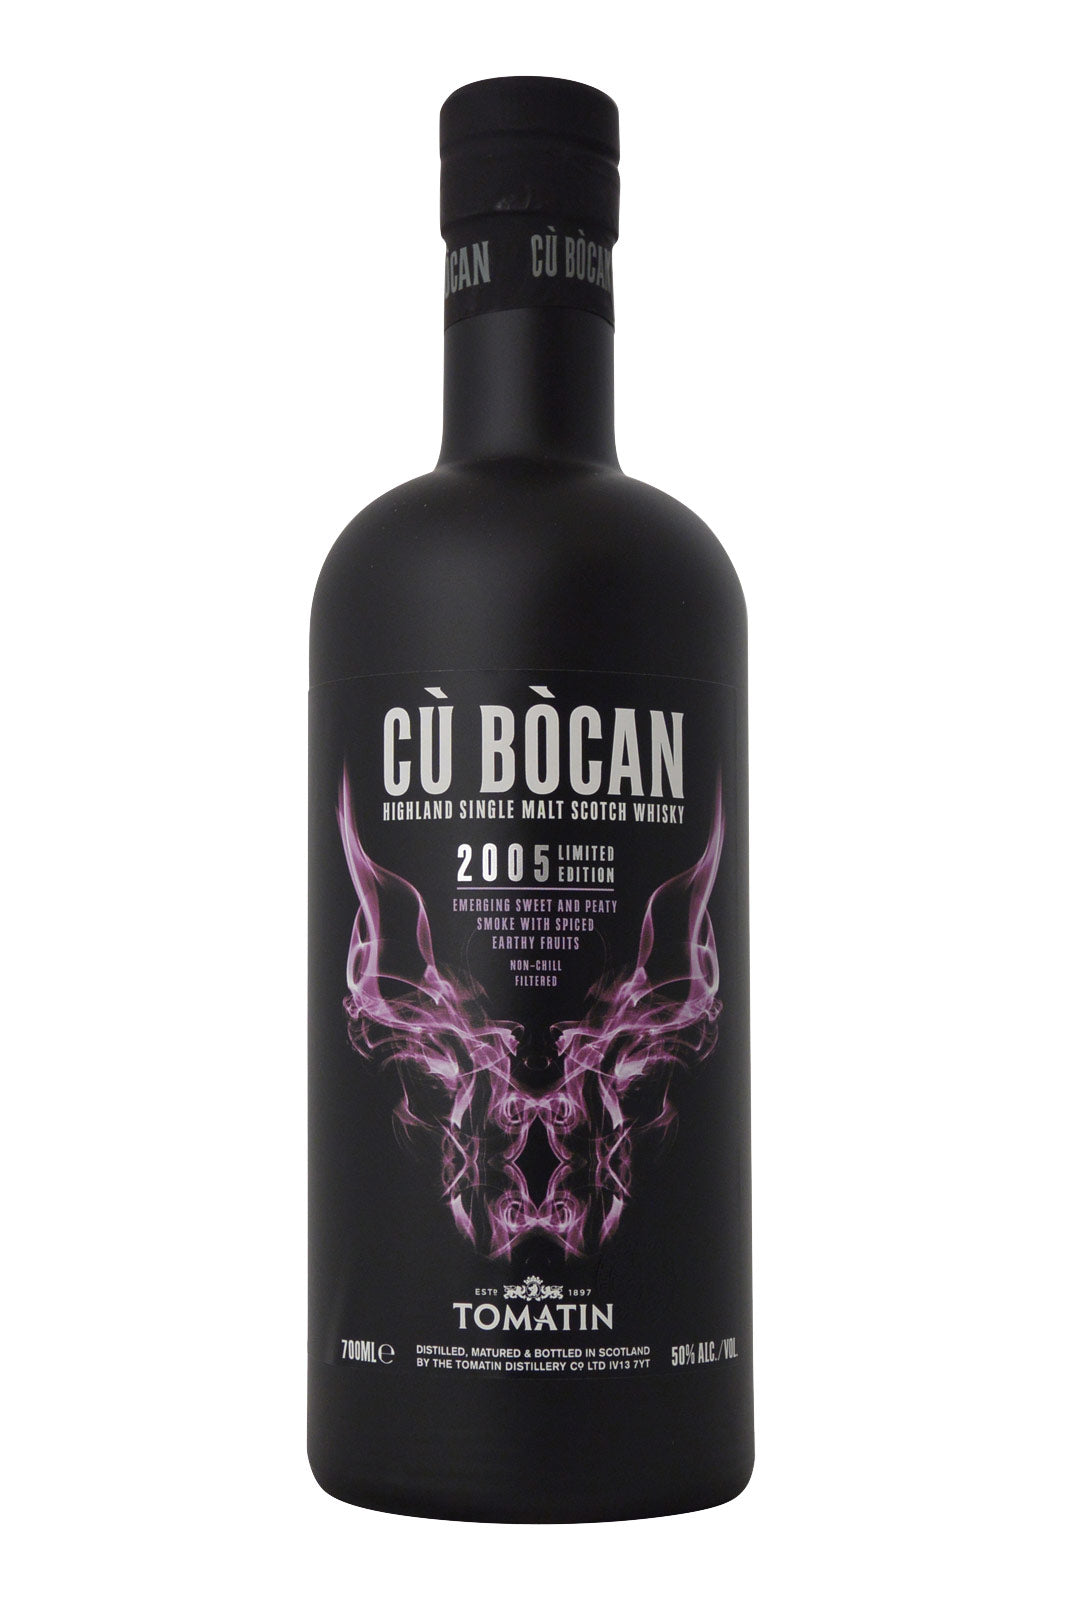 Cu Bocan 2005 Limited Edition